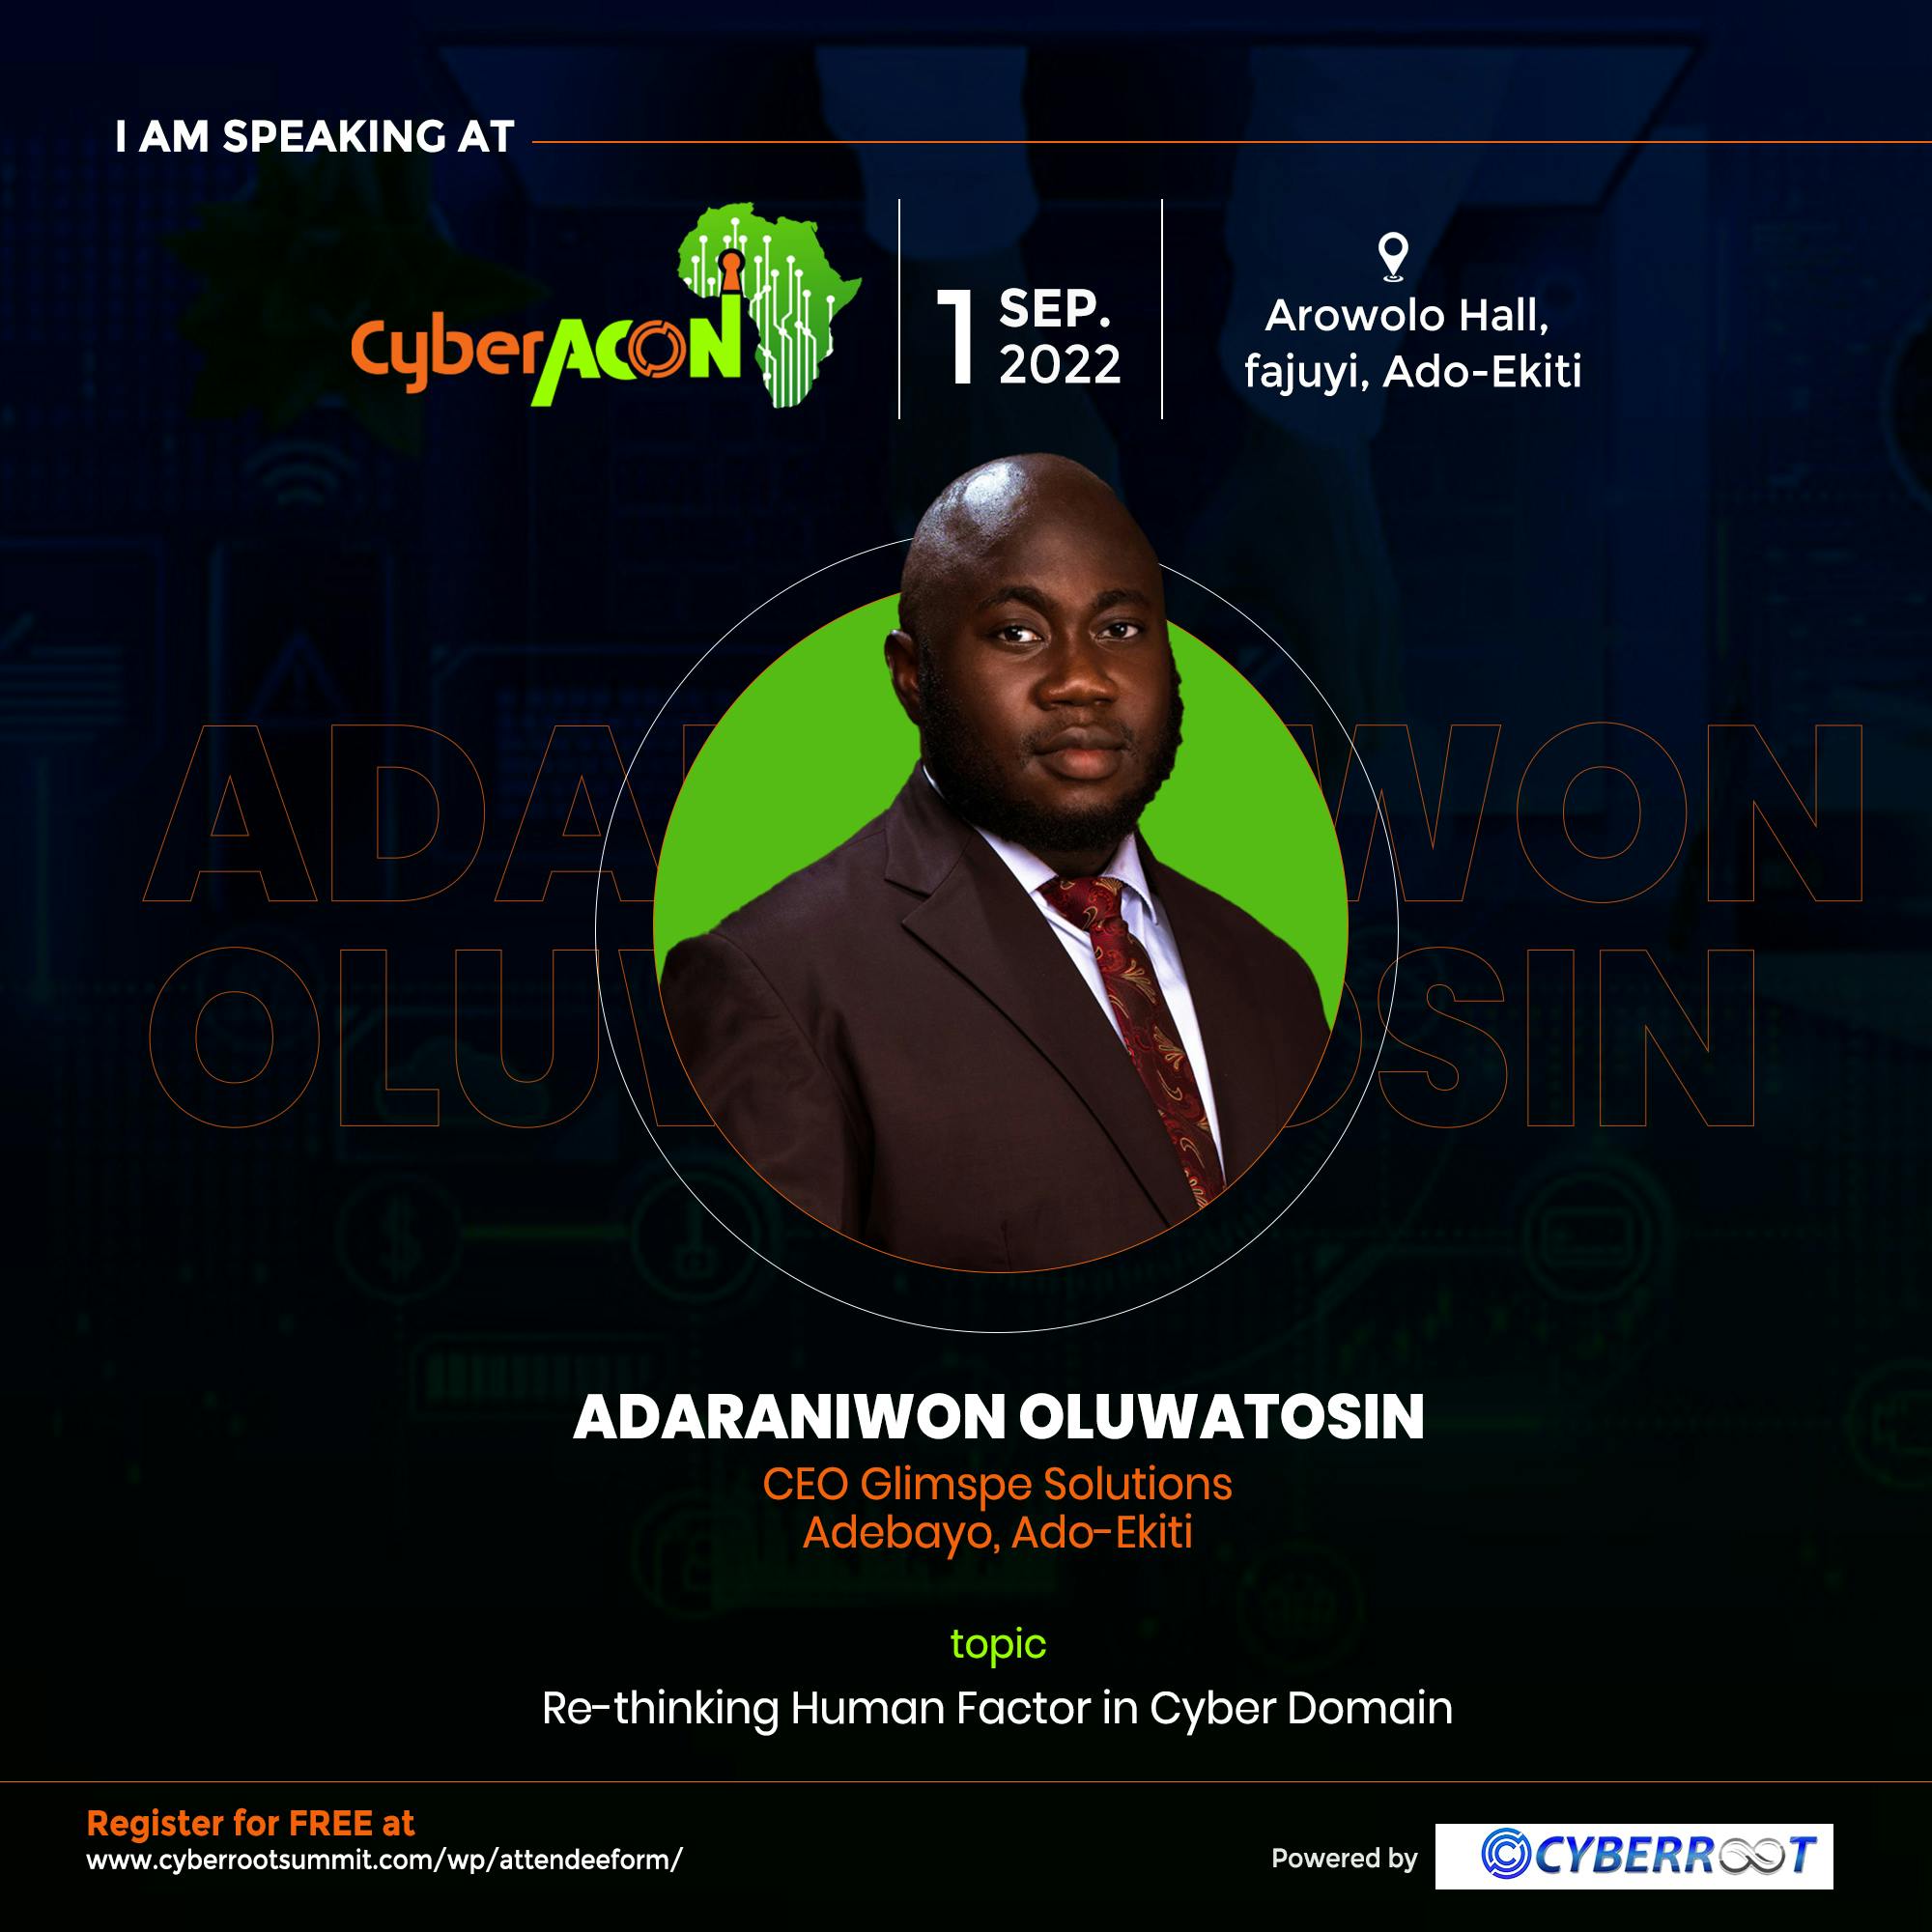 CEO Glimspe Solution Adebayo, Ado-Ekiti